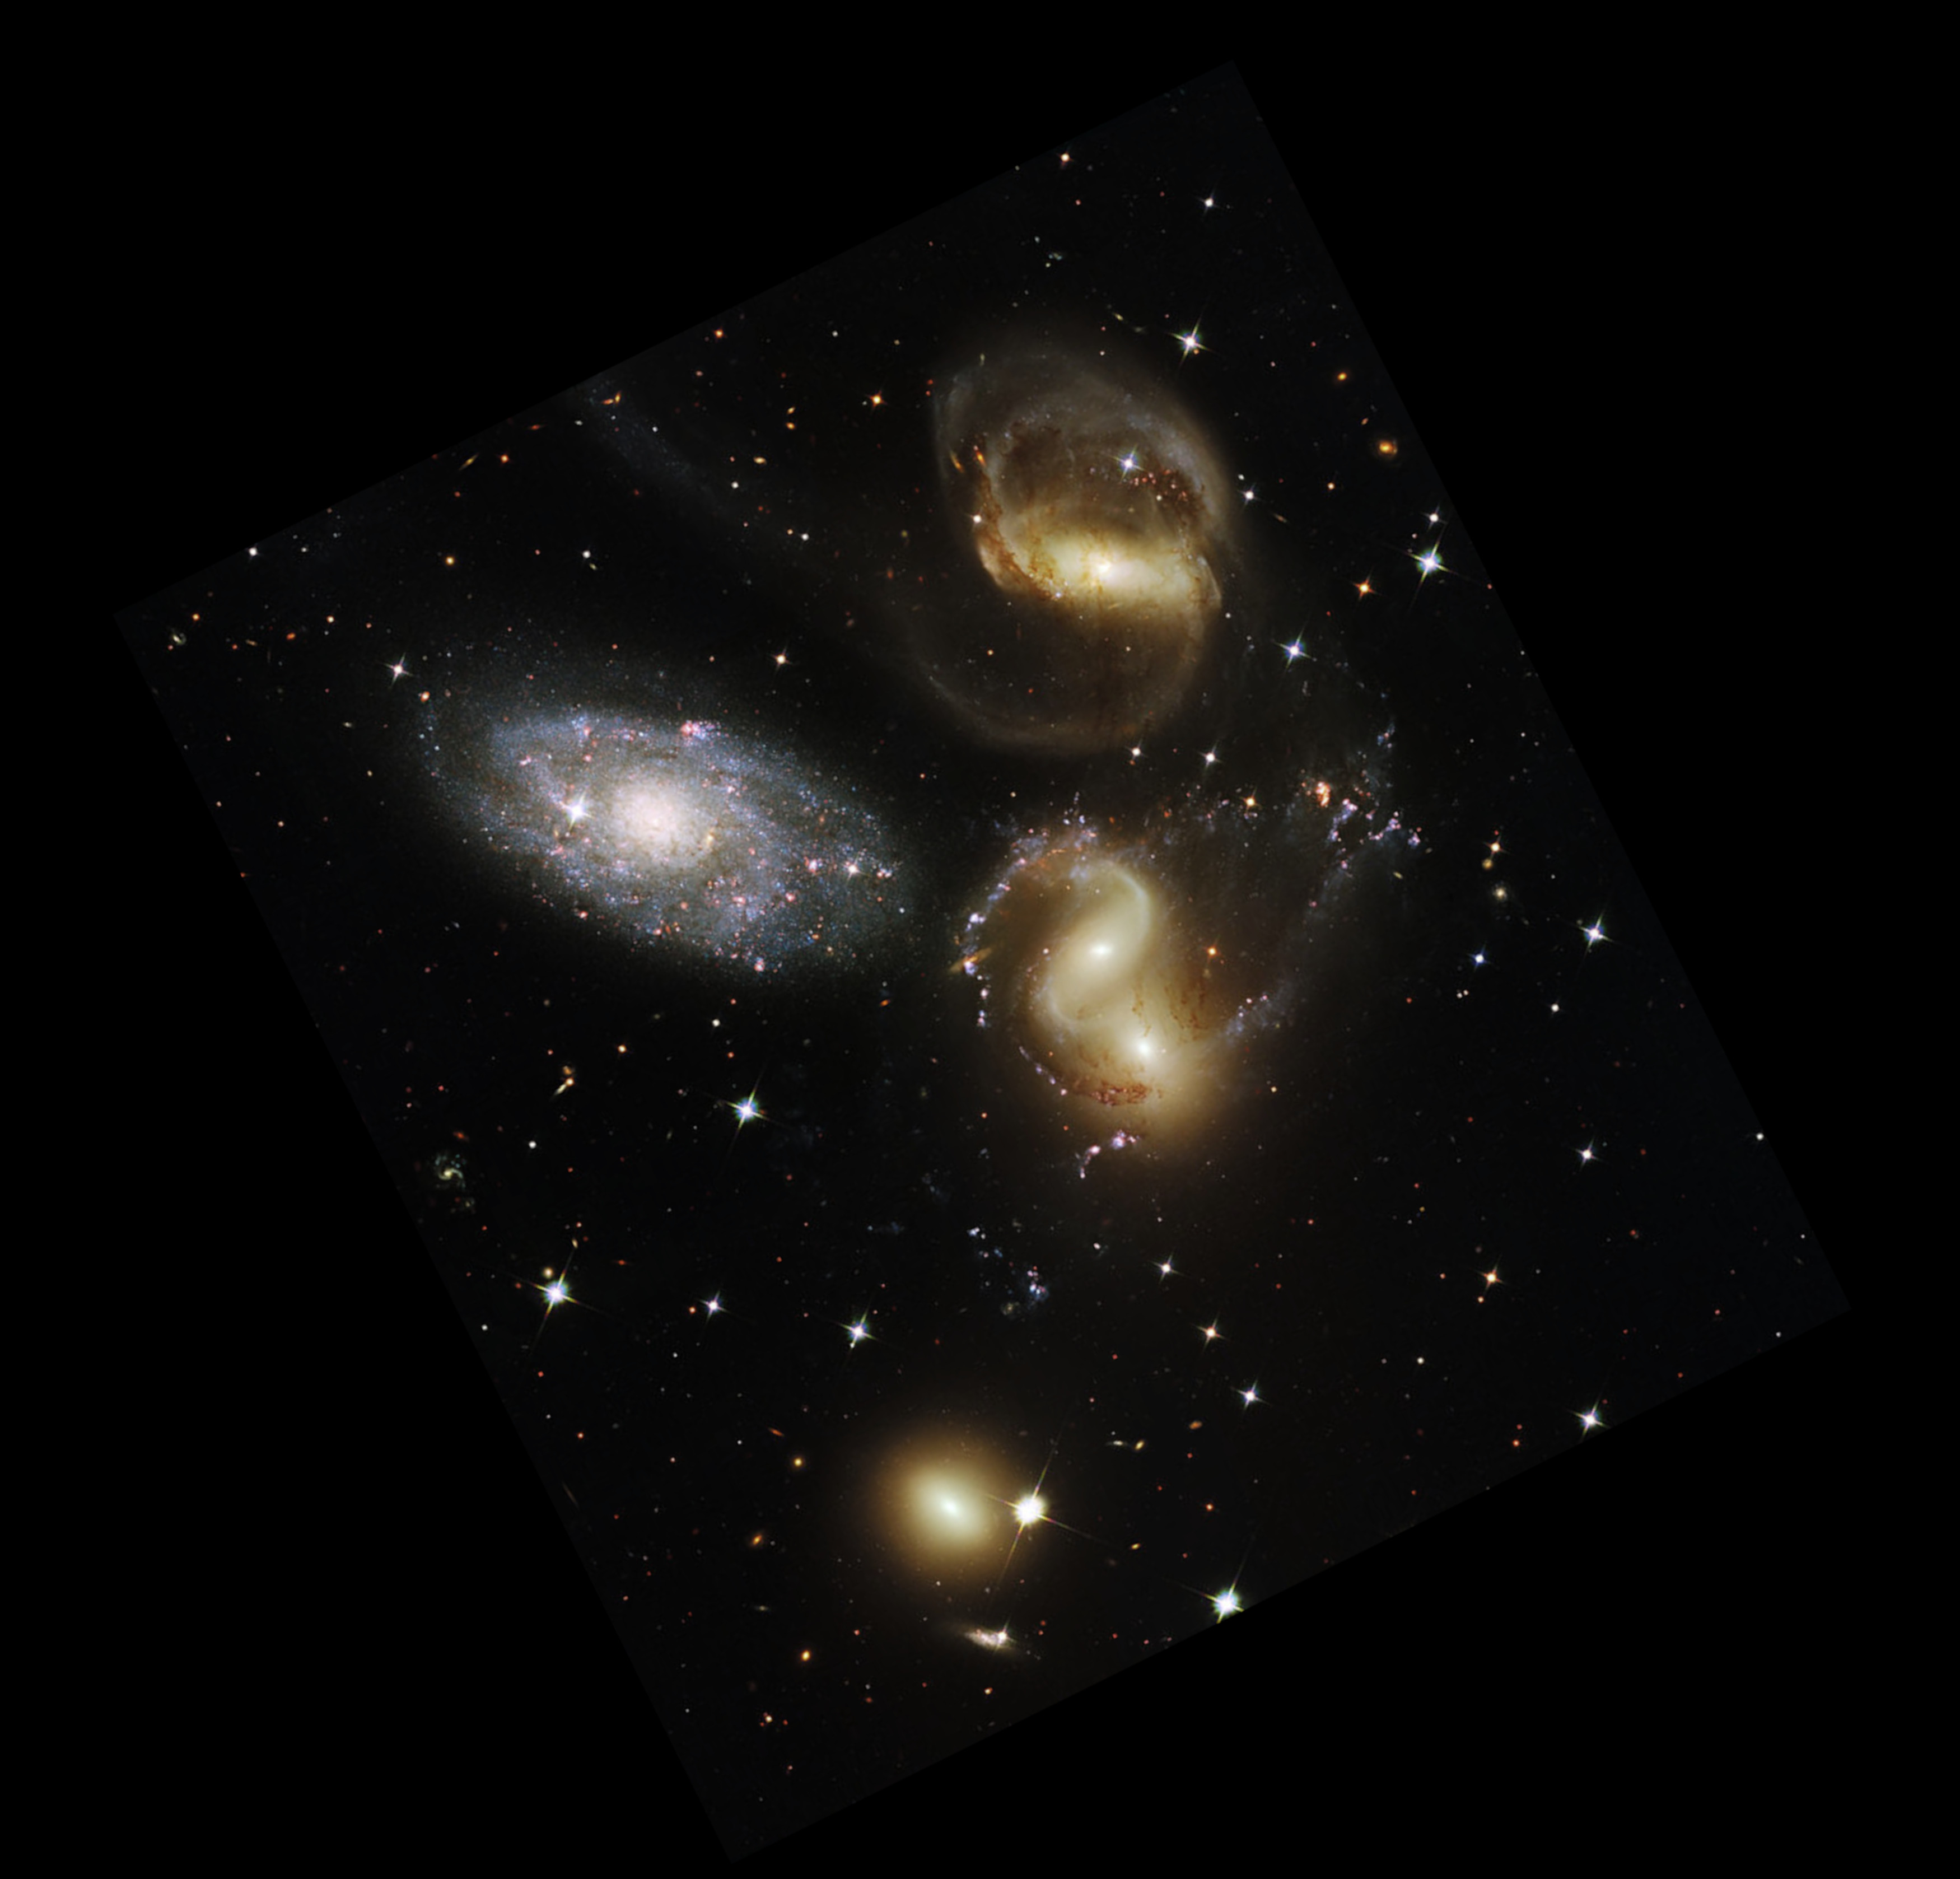 Hubble's Stephan's Quintet